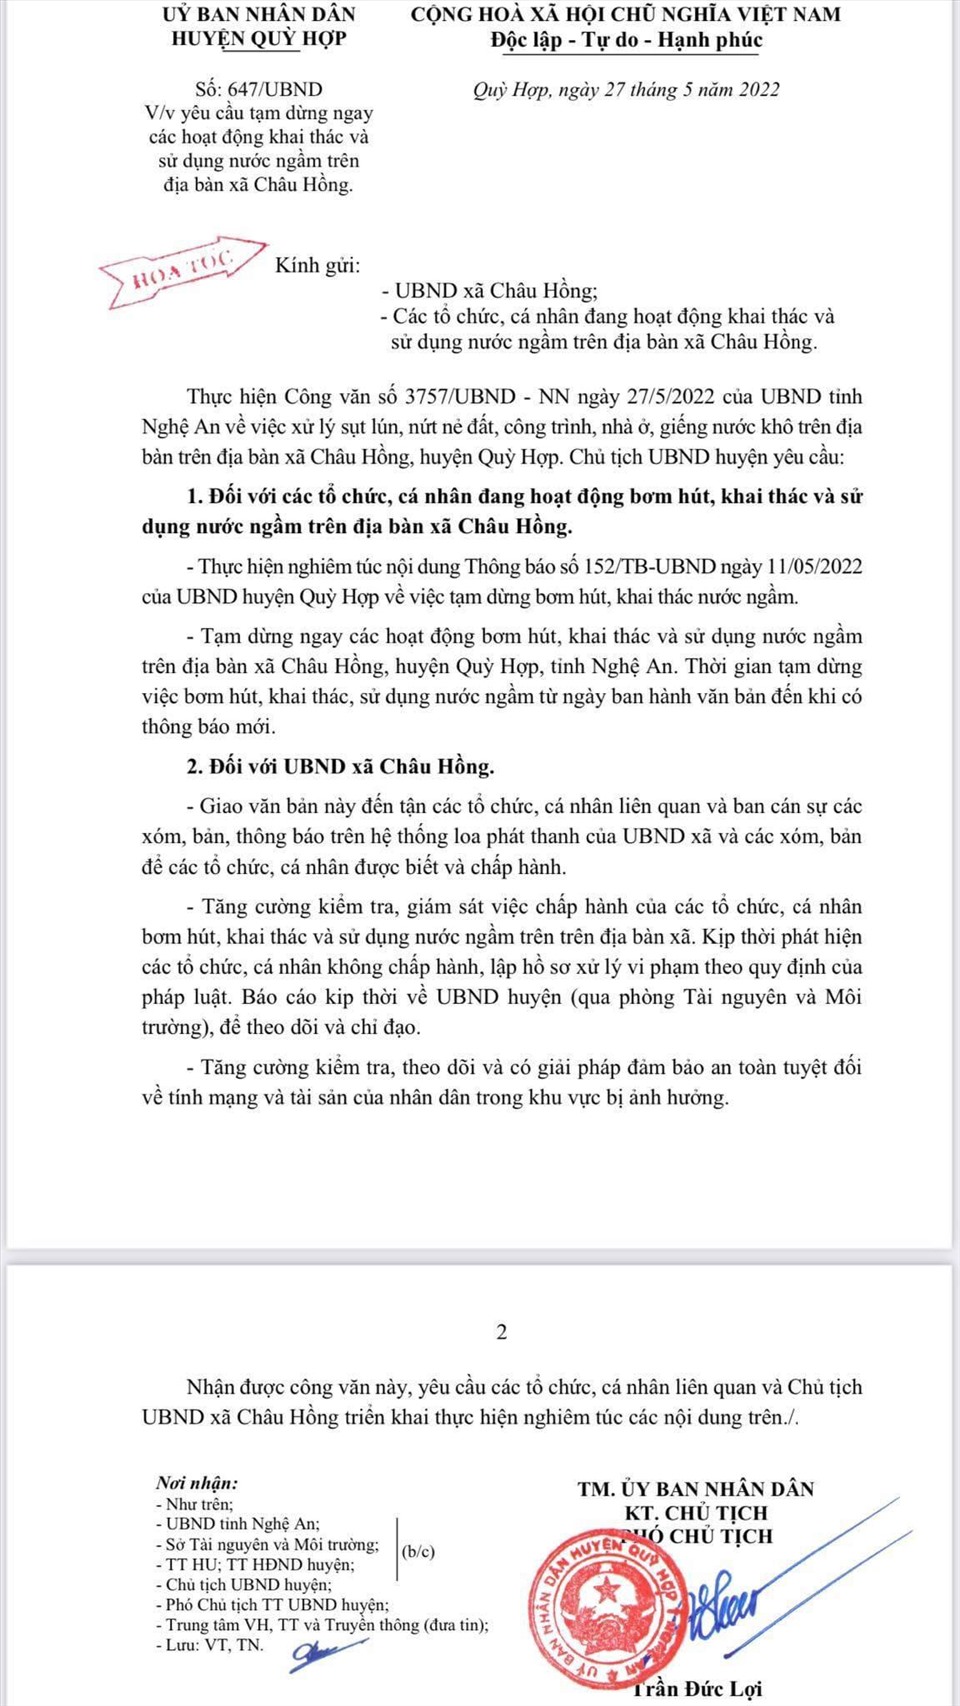 Văn bản hỏa tốc của UBND huyện Quỳ Hợp đình chỉ việc khai thác nước ngầm trên địa bàn xã Châu Hồng. Ảnh: QĐ